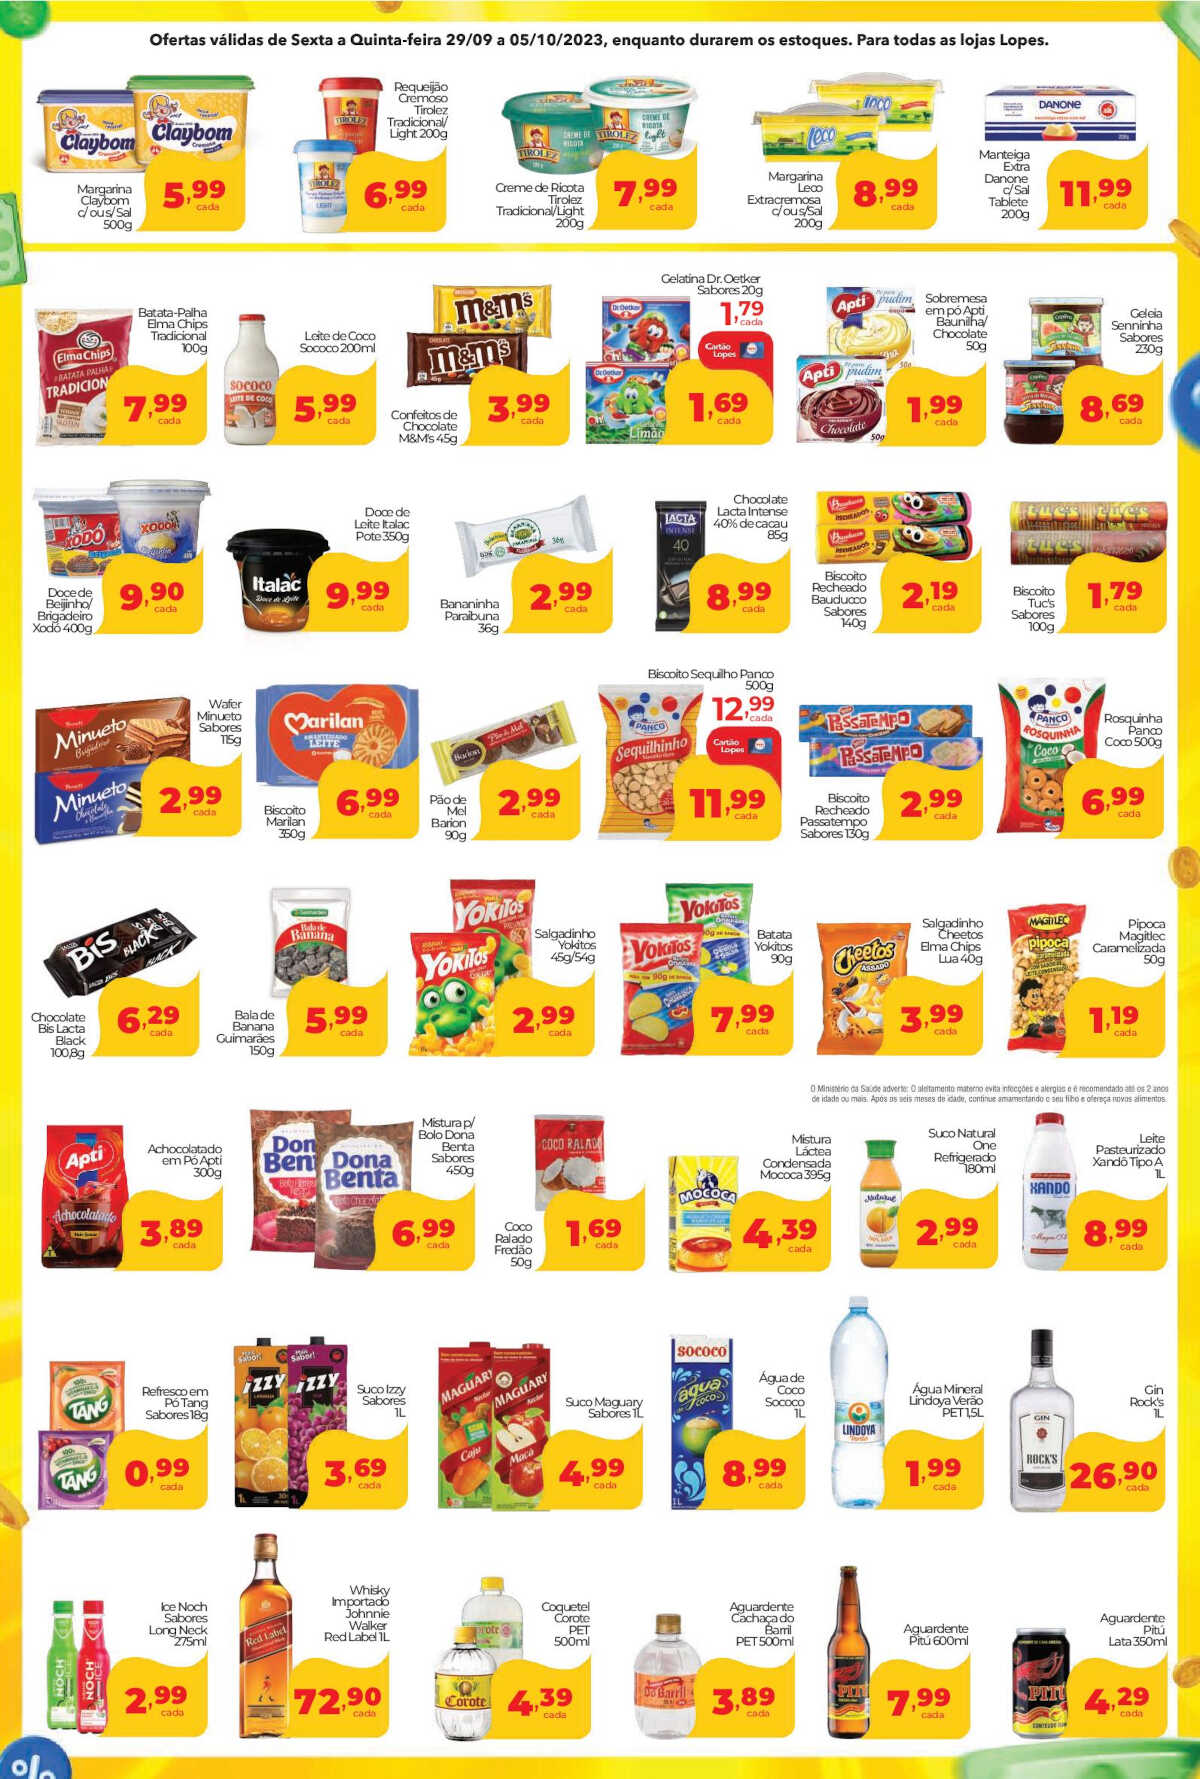 Ofertas Lopes Supermercados até 05/10